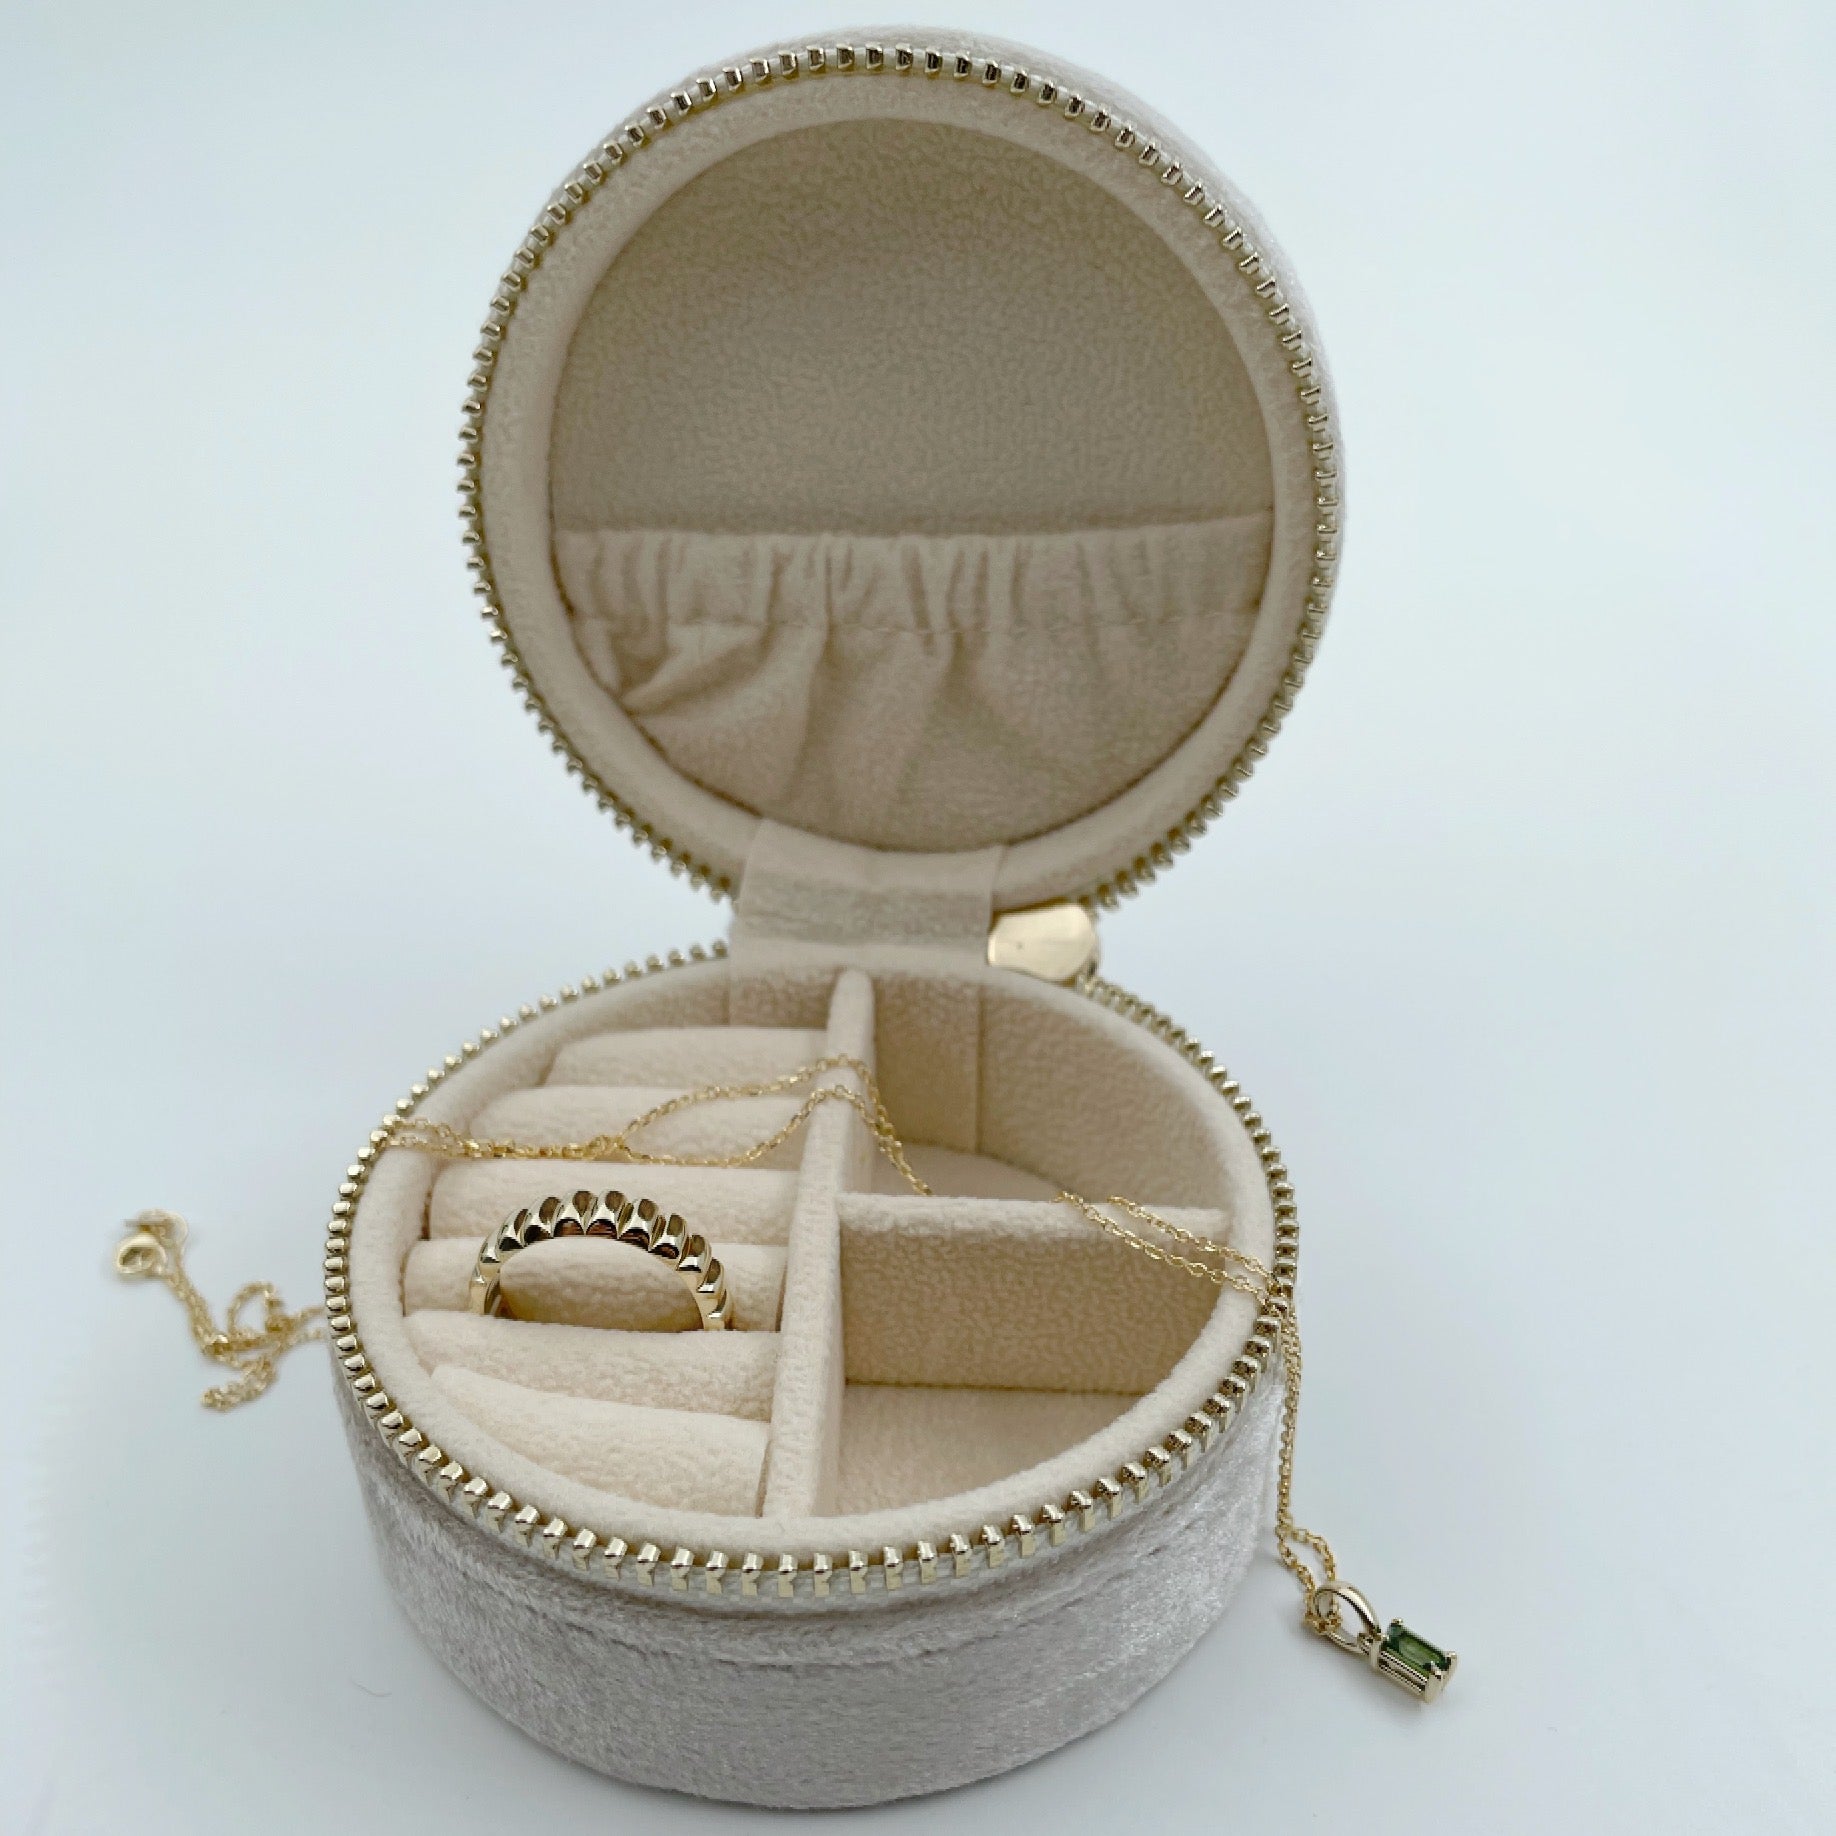 Round velvet jewellery case, open with jewelry inside